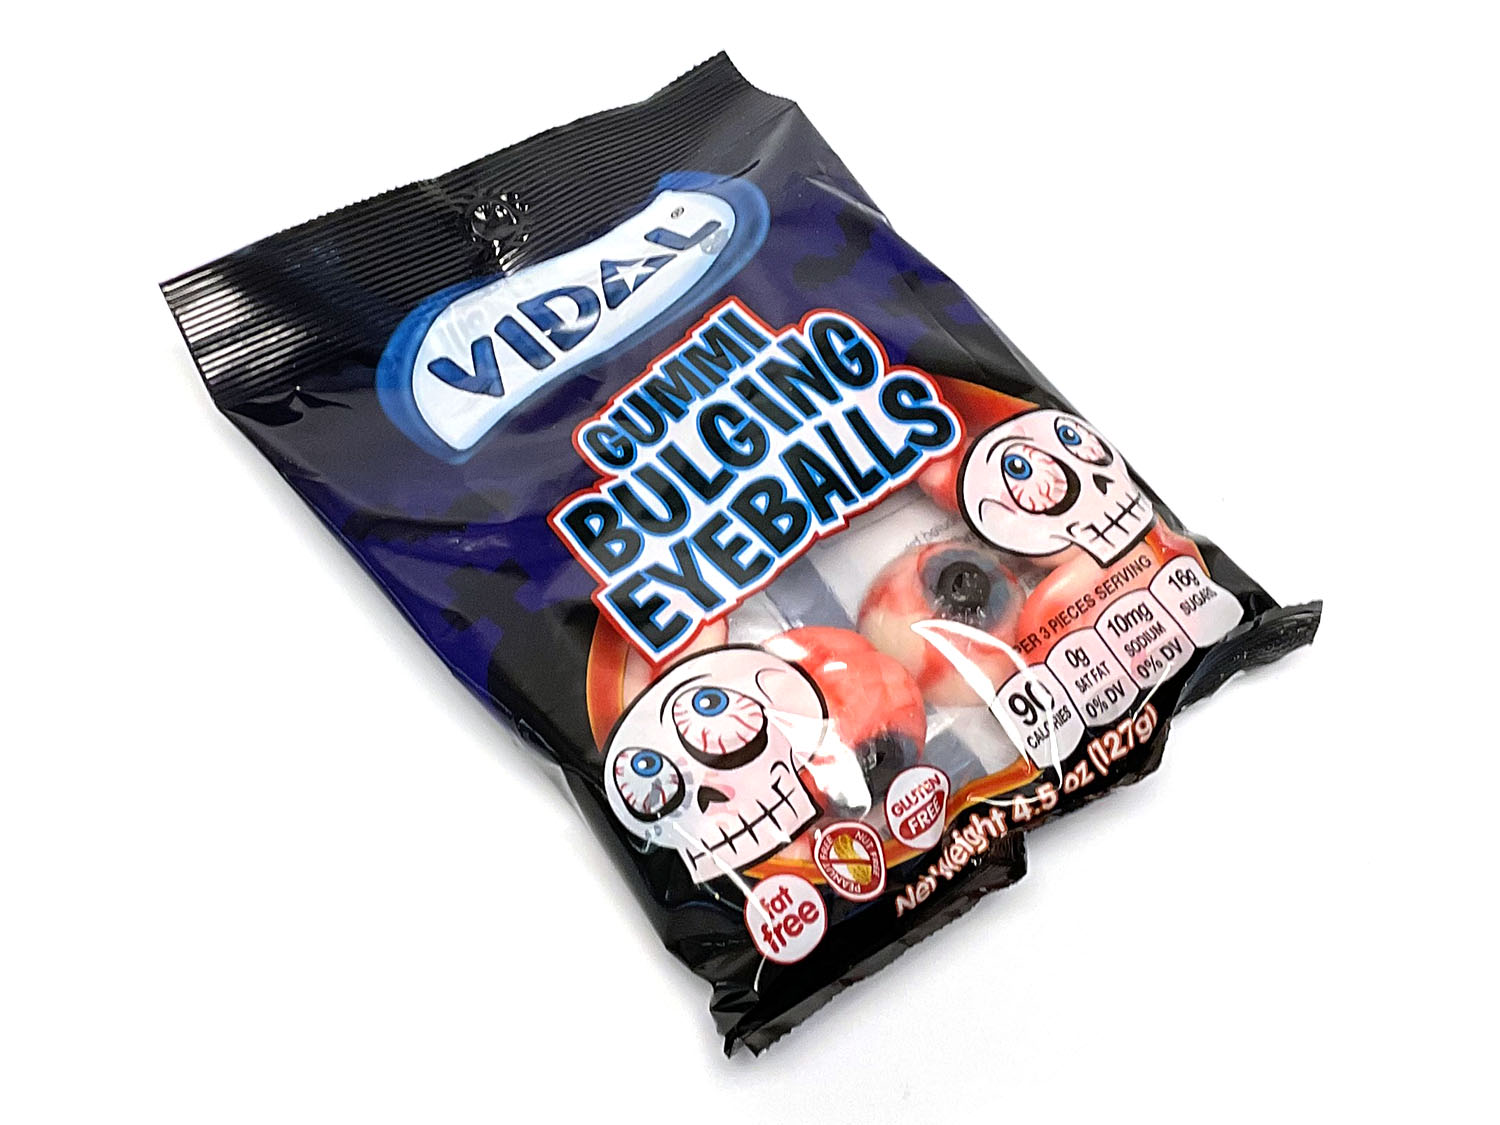 Gummi Bulging Eyeballs - 4.5 oz bag